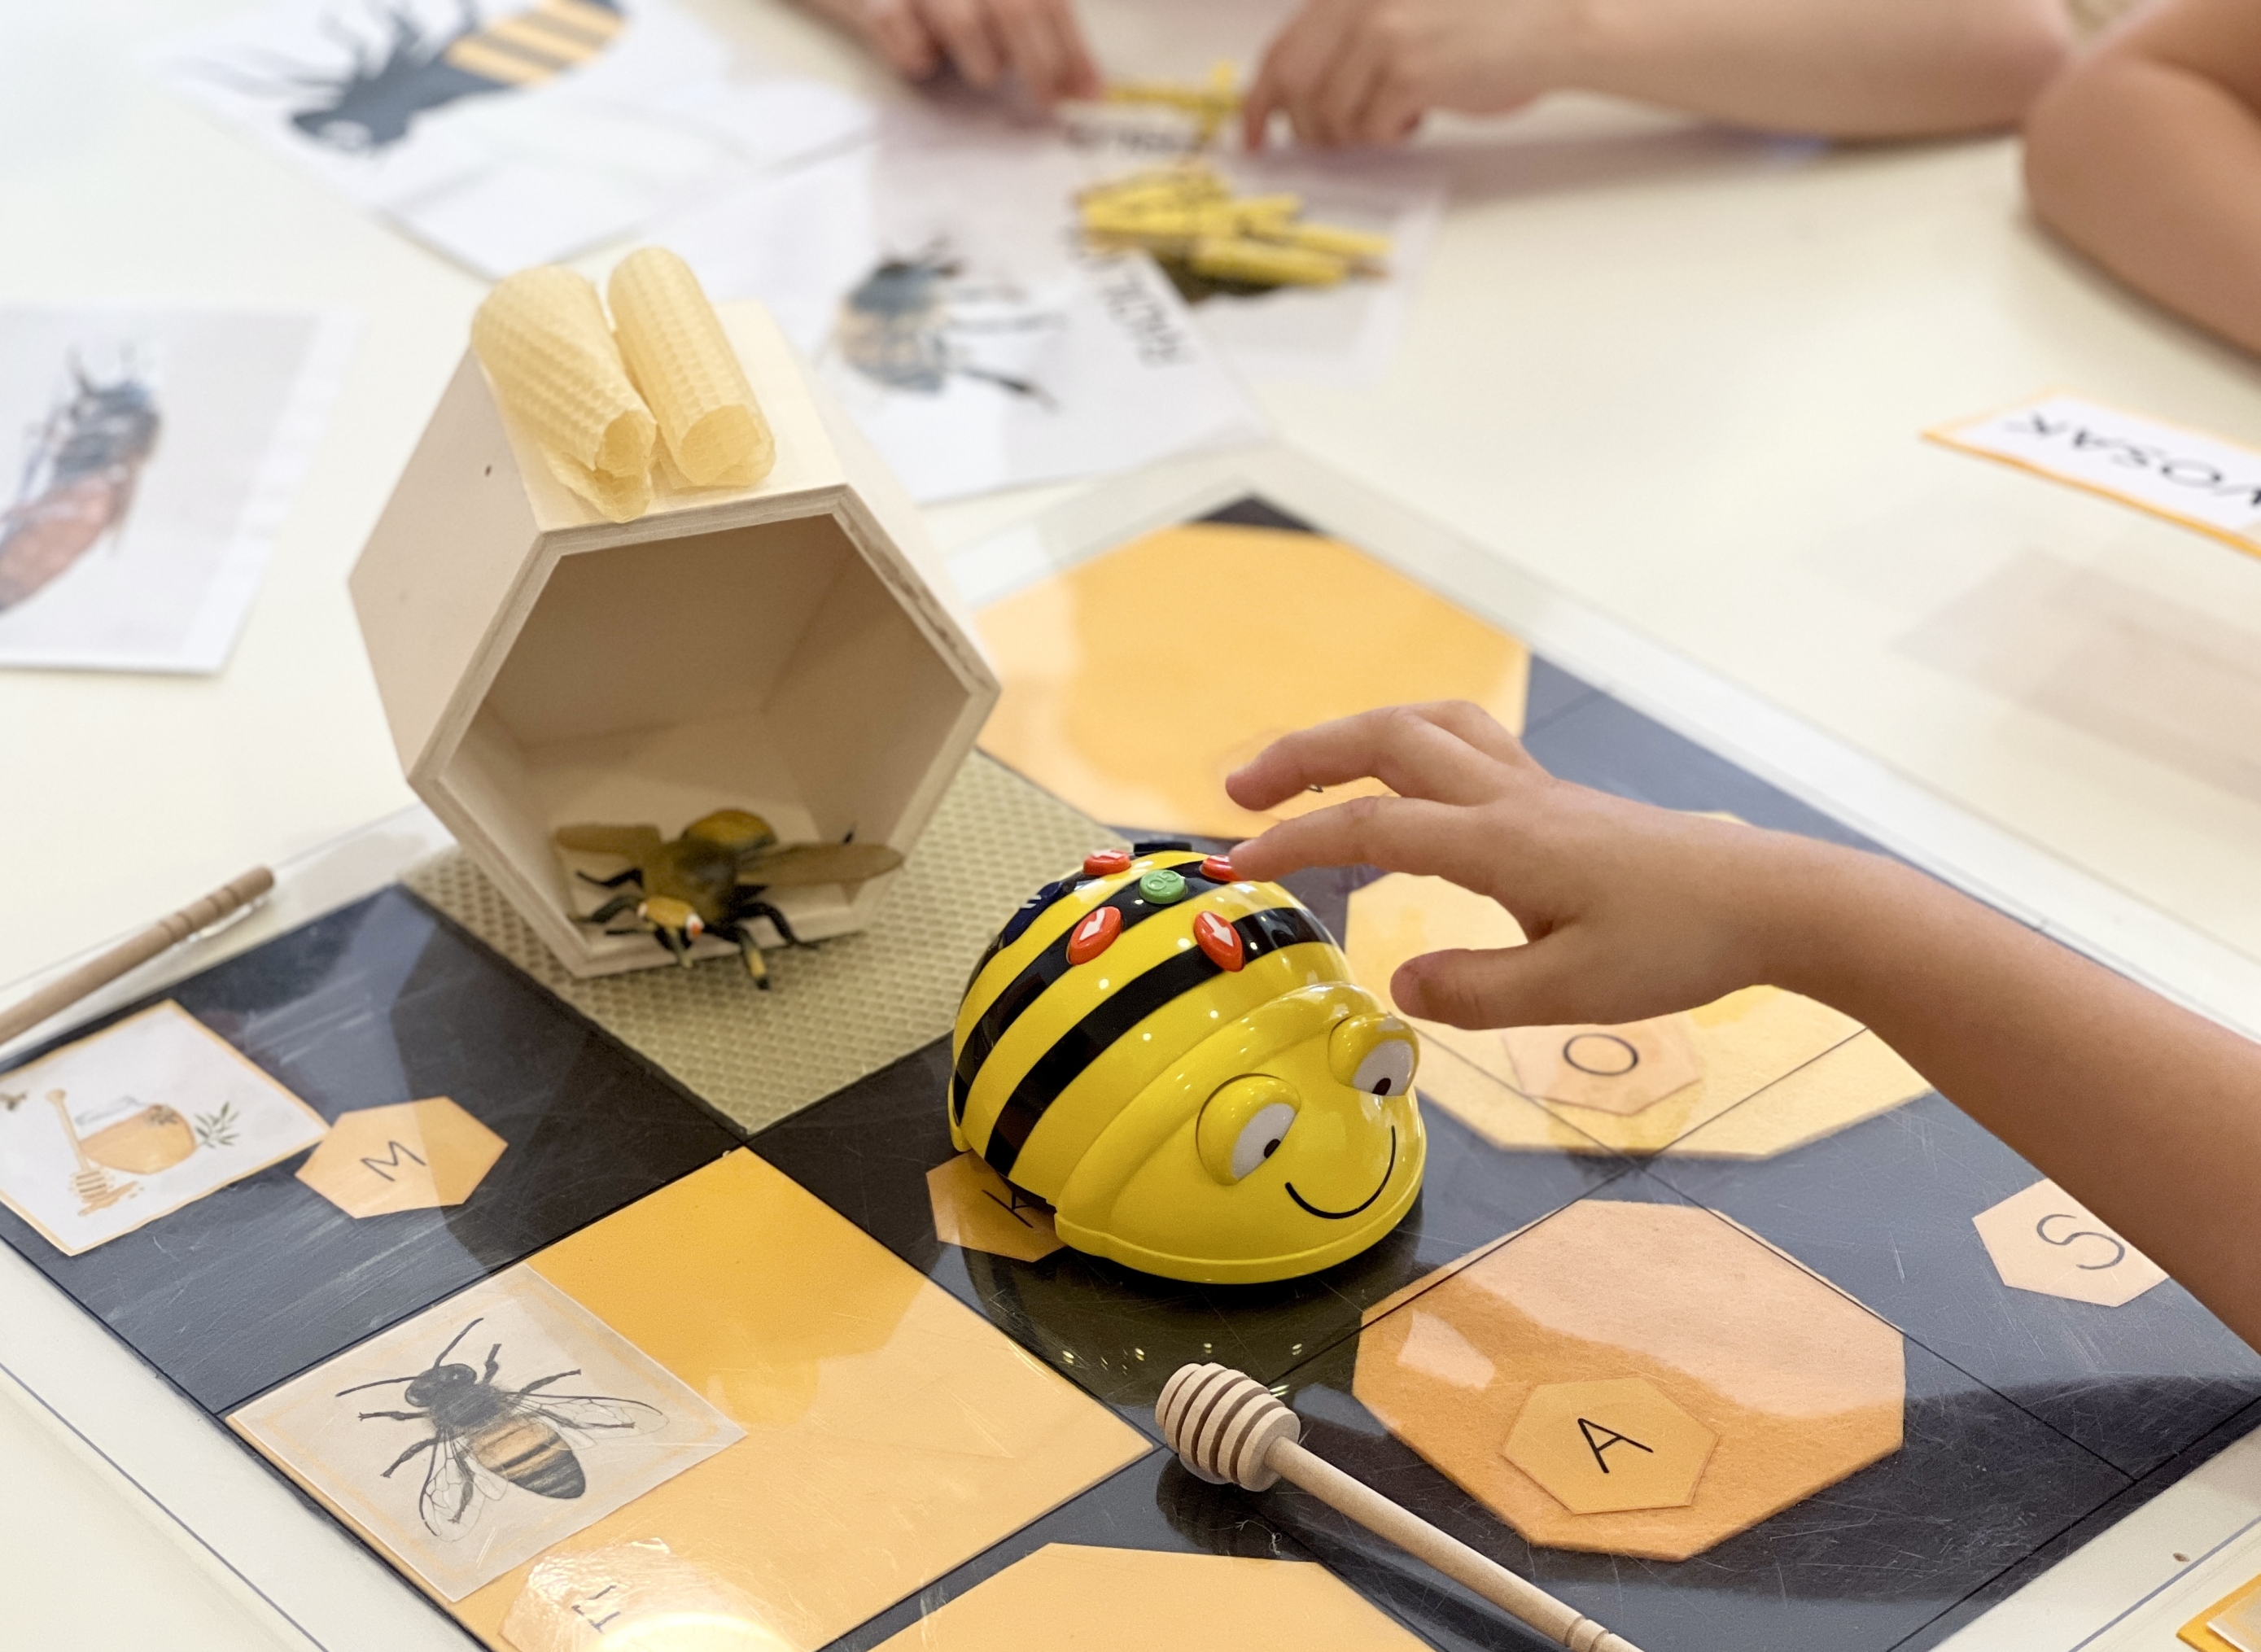 Prijavite svoj vrtić i školu na prvi natječaj o gigaBEEtnim pčelama